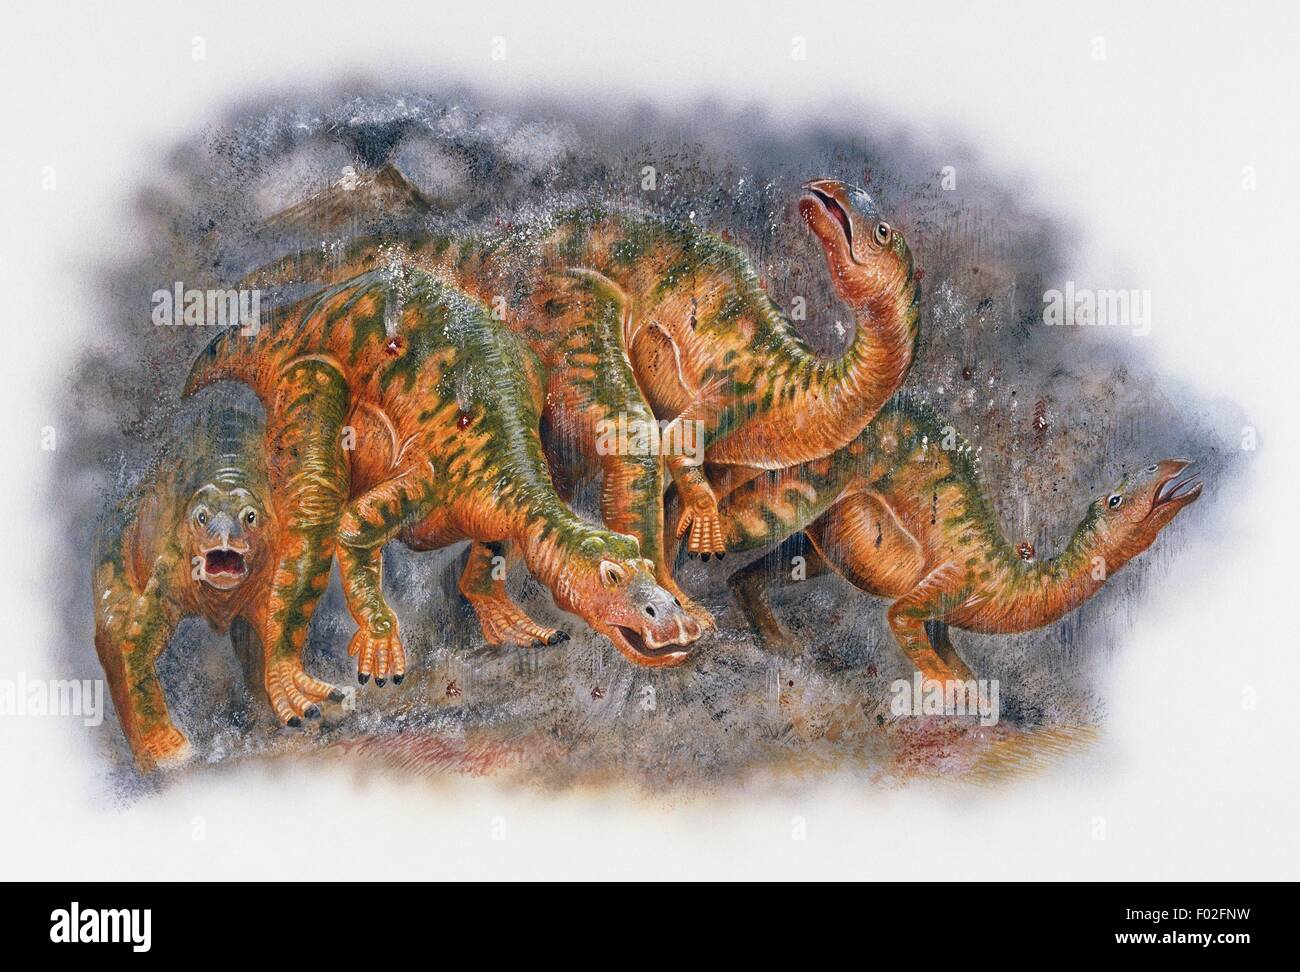 Un groupe d'Hadrosaurus foulkii, Hadrosauridae, sous une pluie de cendres volcaniques, fin du Crétacé. Illustration de Steve Roberts. Banque D'Images